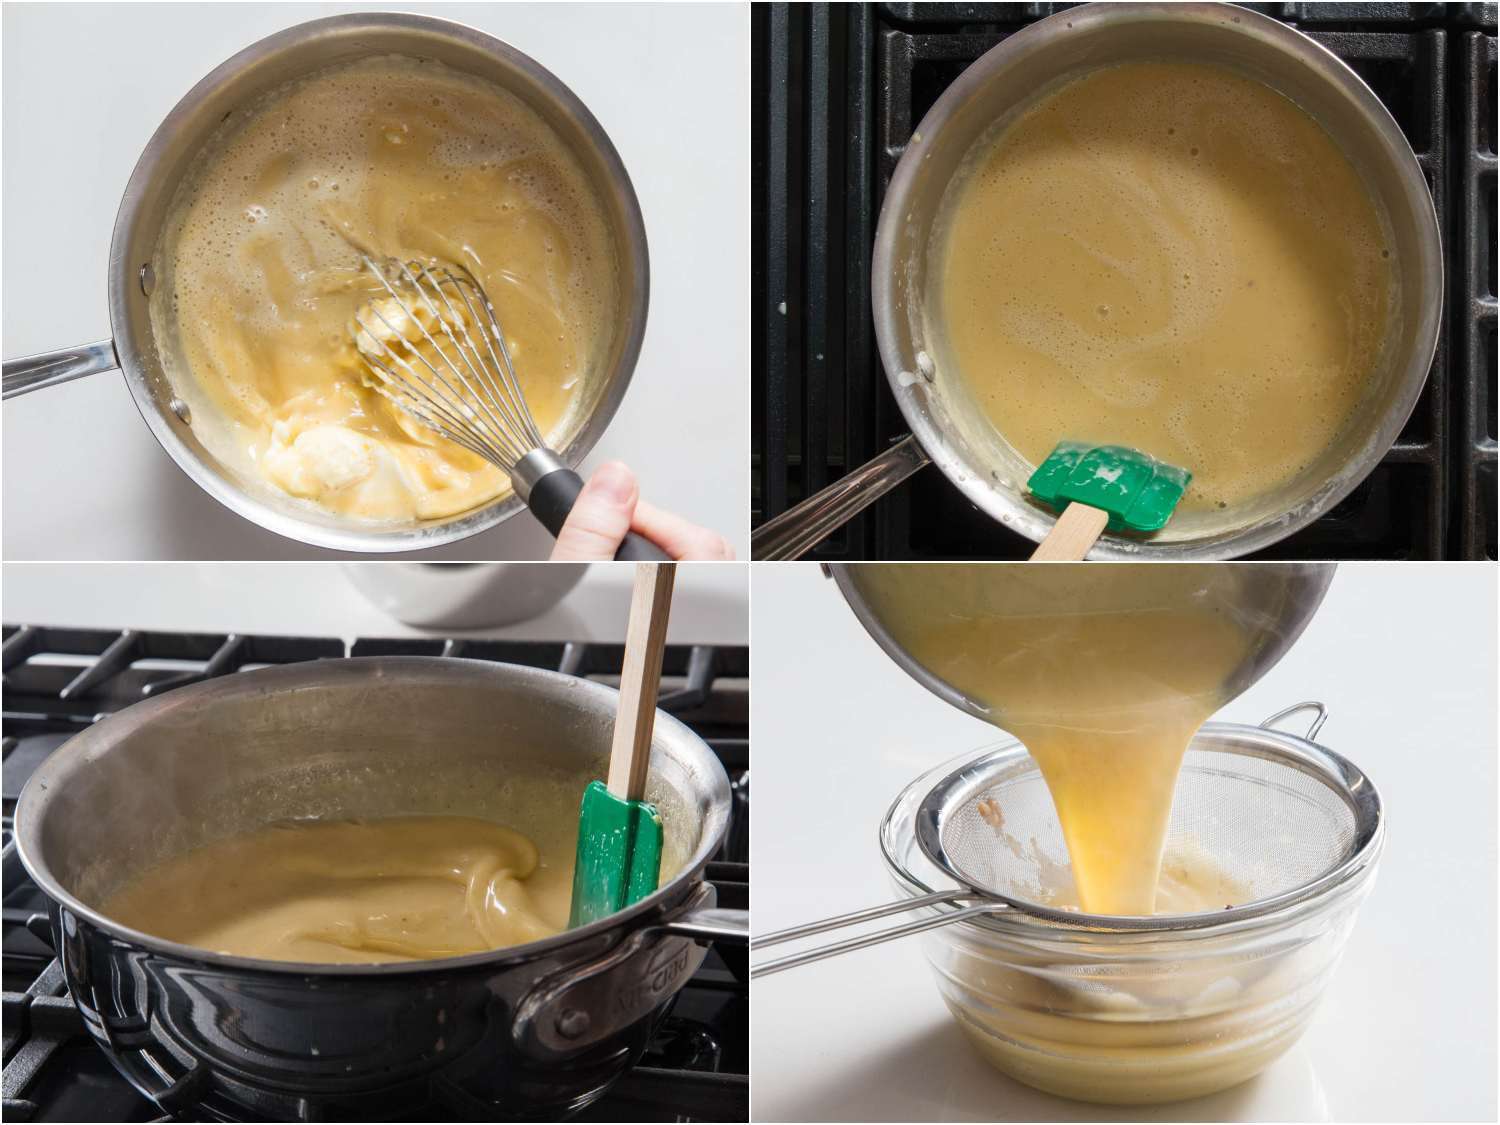 拼贴画展示了将马斯卡彭干酪搅拌到榛子蛋奶沙司混合物中的步骤;不断搅拌和刮冰淇淋底，同时使混合物达到热气腾腾的温度;把榛子马斯卡彭蛋奶沙司倒入碗中。